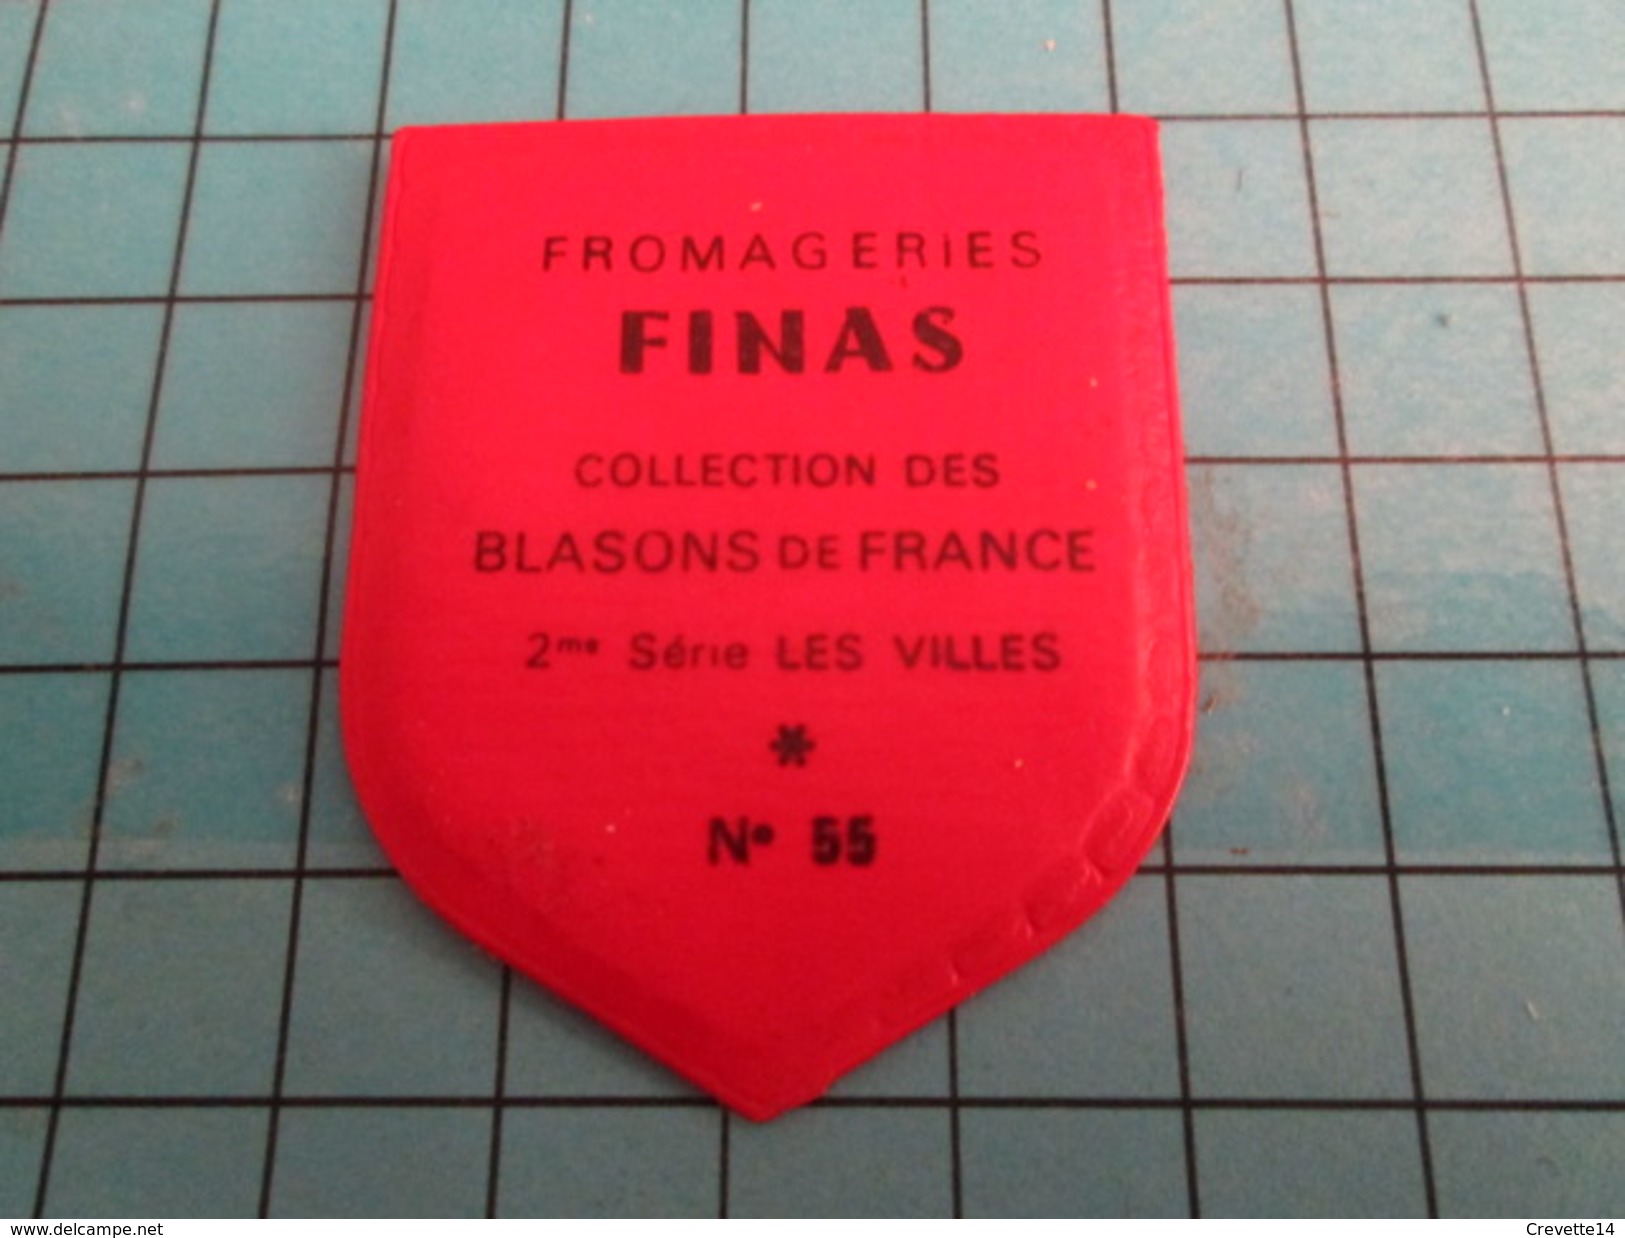 PUB 615 Ecusson Publicitaire Années 60  FROMAGERIE FINAS / BLASONS DE FRANCE LES VILLES N°55 BOURG - Magnets